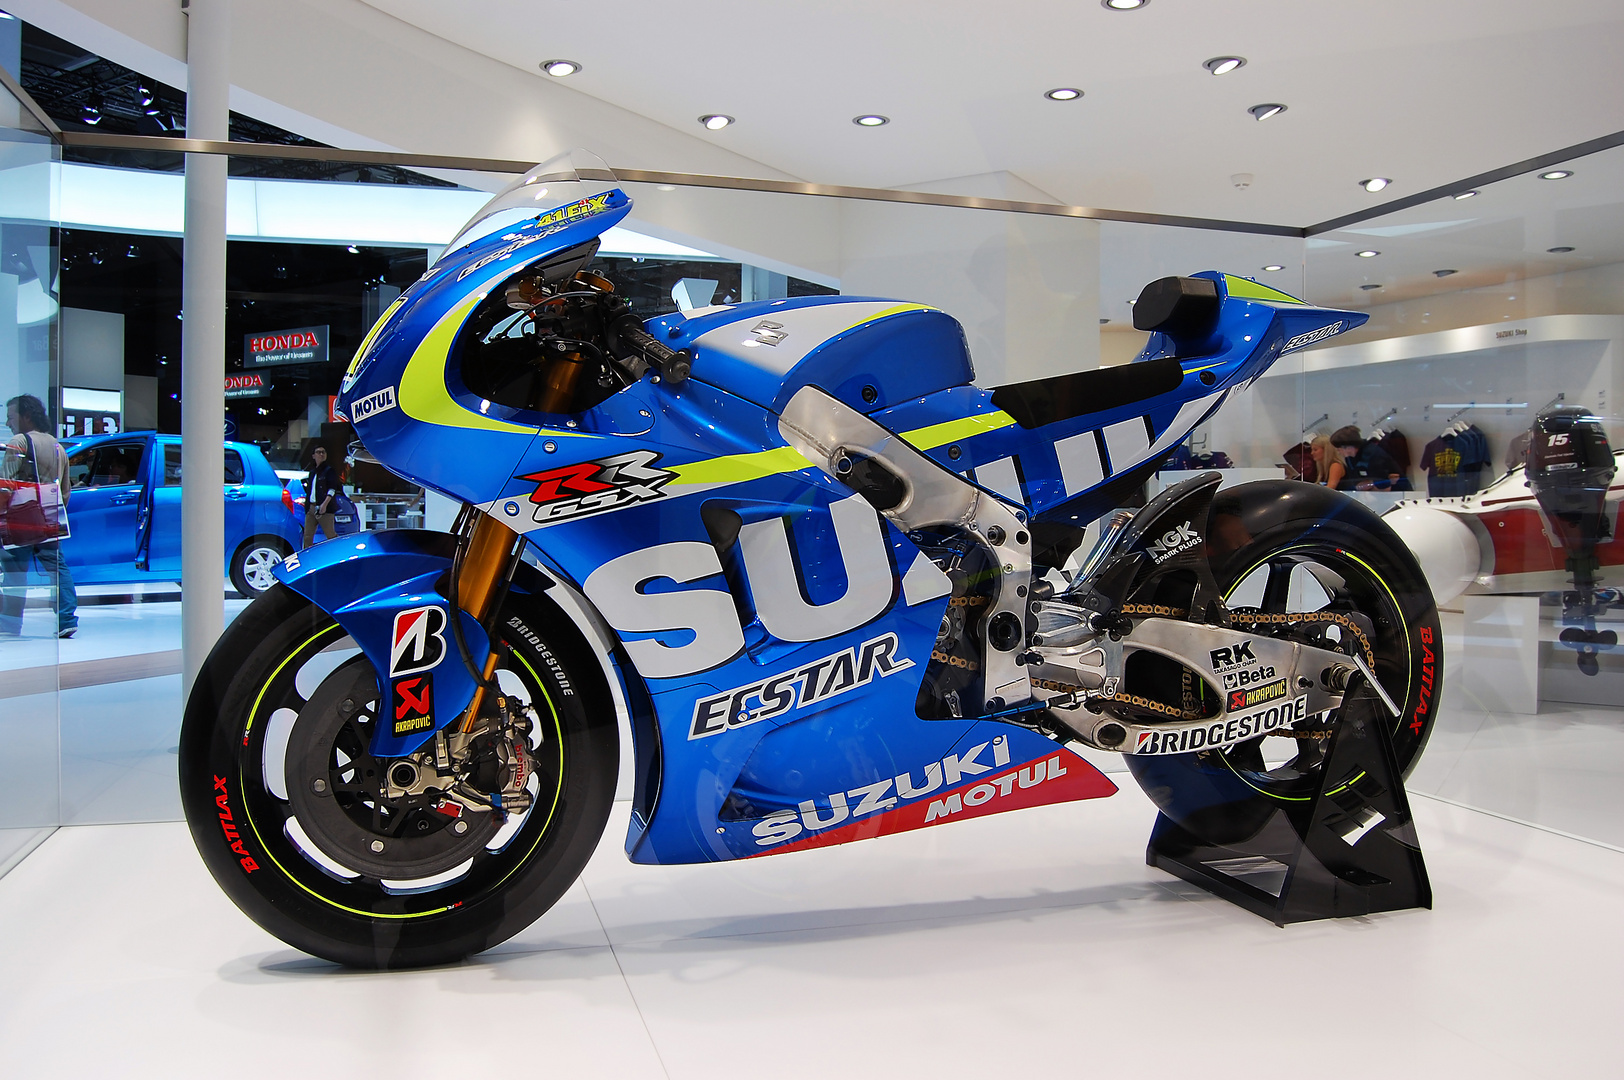 Suzuki GSX-RR Moto GP